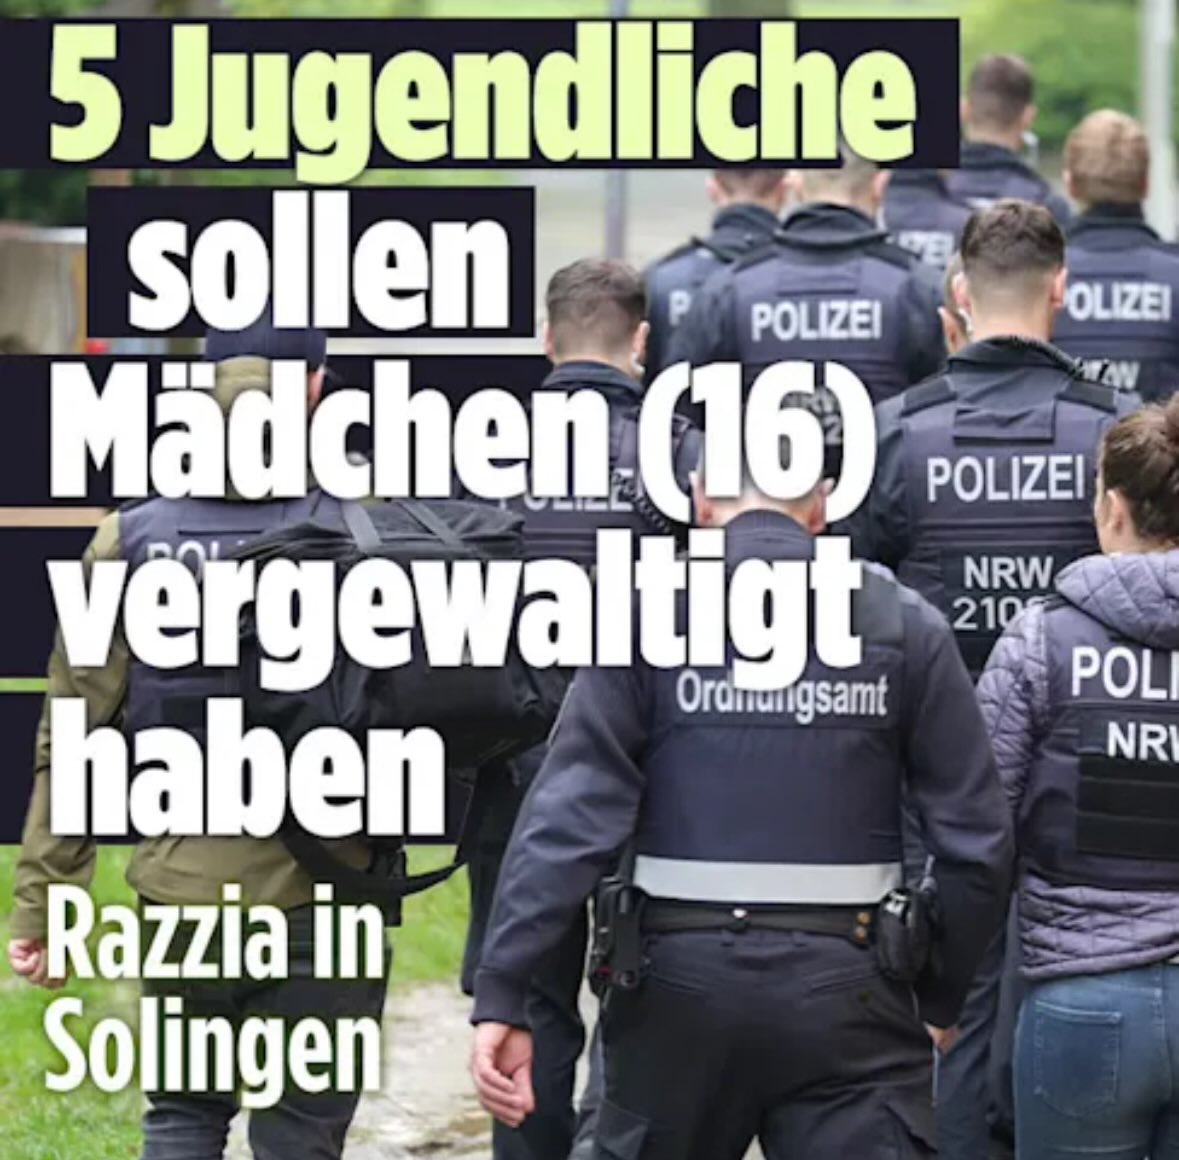 Wir haben Angst. Angst, dass es sich bei den beteiligten 5 Jugendlichen in #Solingen um migrantisch gelesene Personen handelt. Das würde erneut für schäbige Hetze gegen Ankommende sorgen. Die demokratischen Parteien müssen sich für eine konsequente Informationssperre einsetzen.